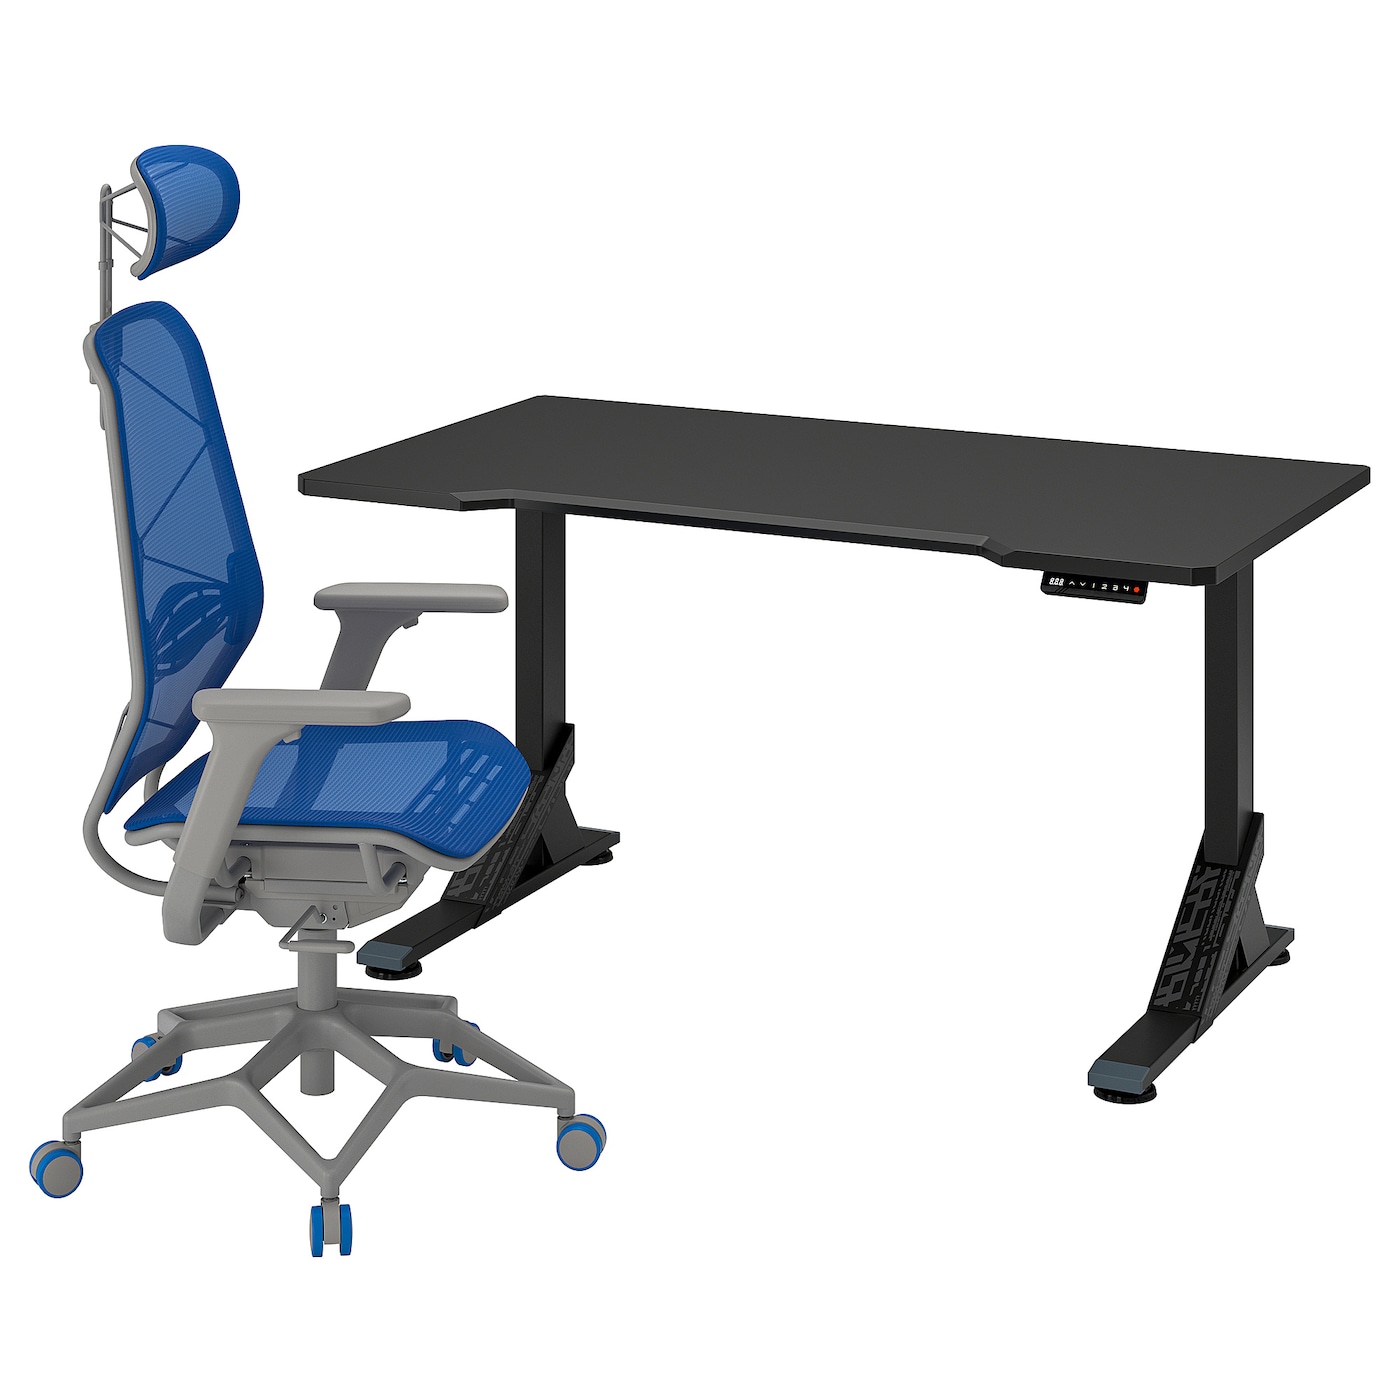 Игровой стол и стул - IKEA UPPSPEL/STYRSPEL, 140х80 см, черный/серый/синий, УППСПЕЛ/СТИРСПЕЛ ИКЕА